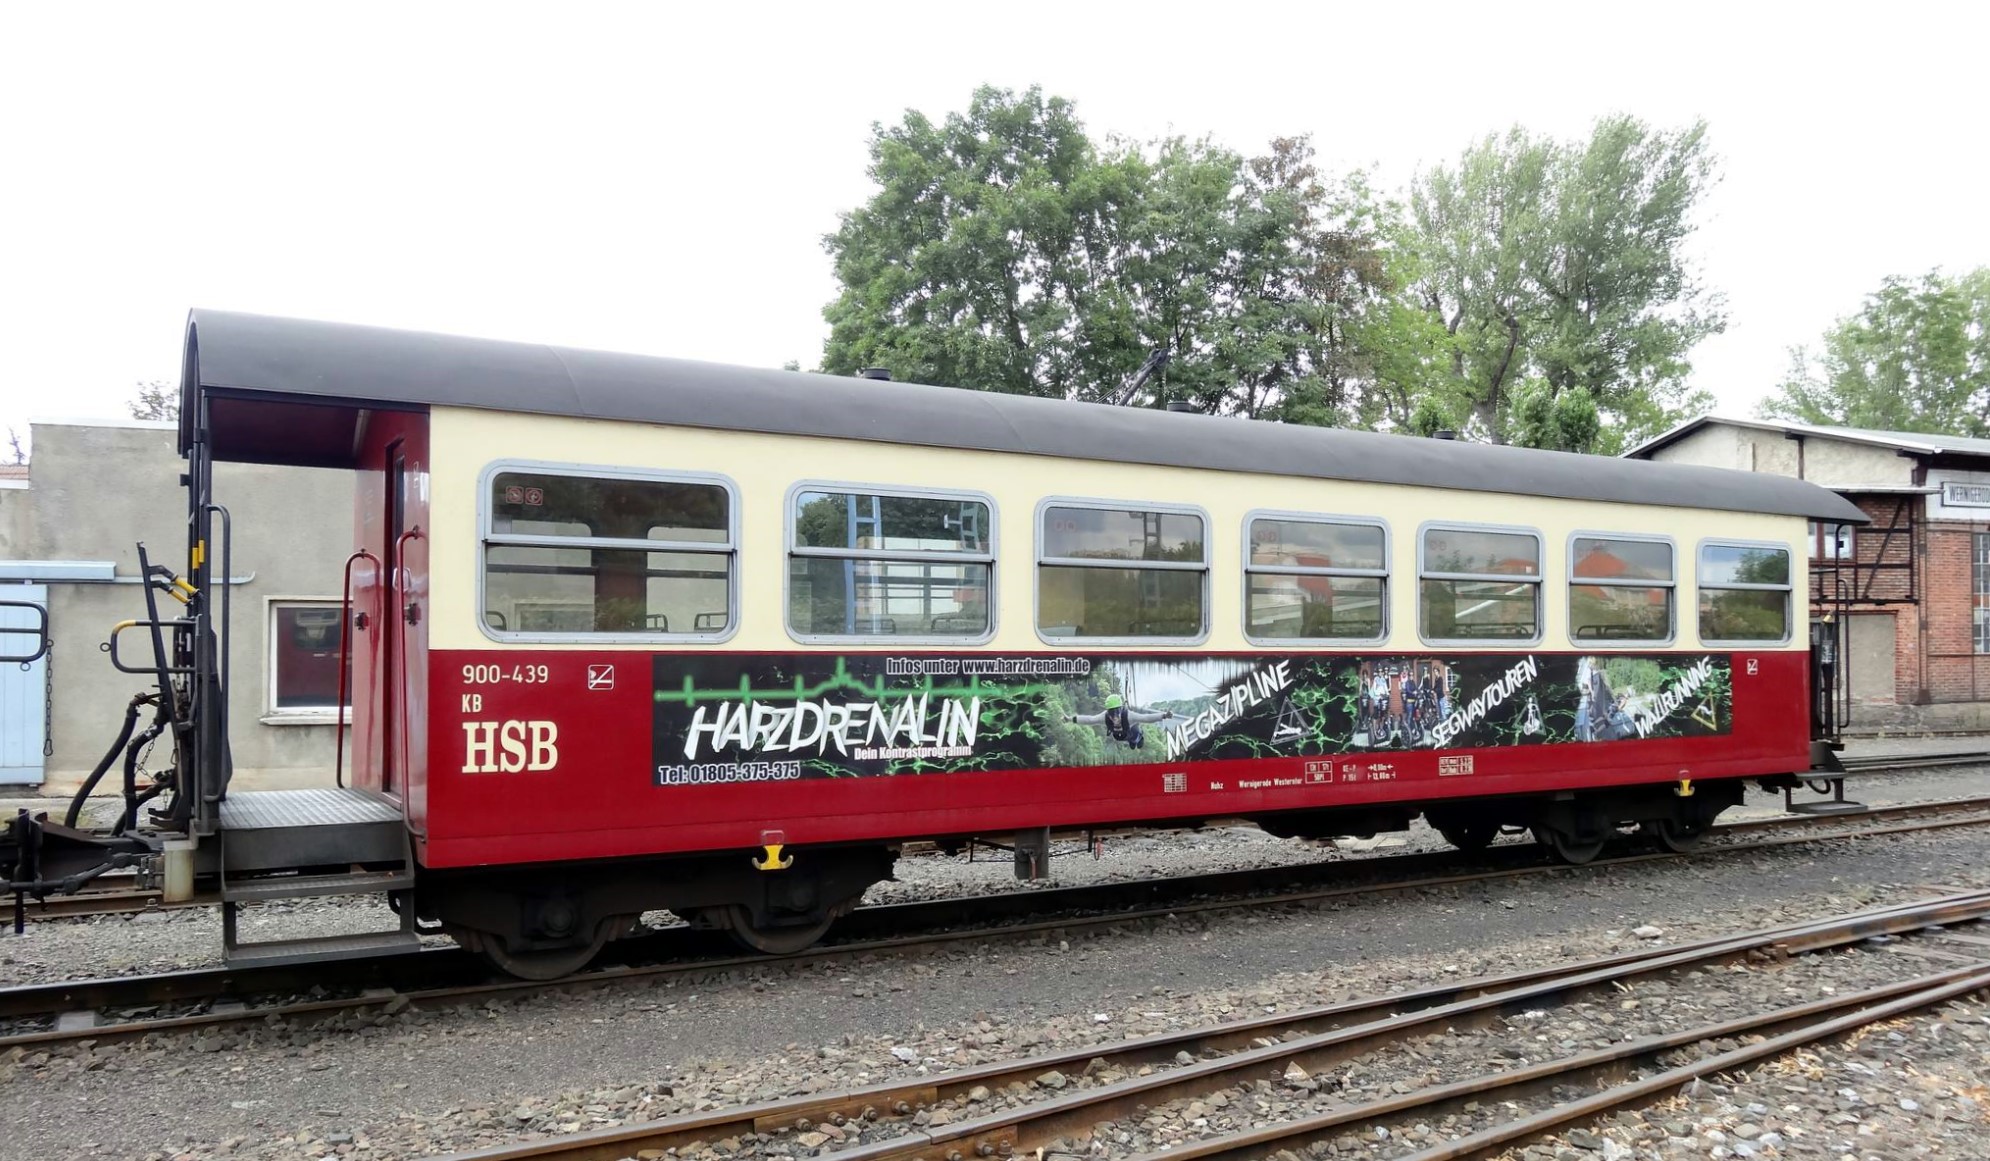 So sieht der HSB Wagen "Harzdrenalin" aus. Danke an Christian aus dem Facebook fr die bermittlung des Fotos. 